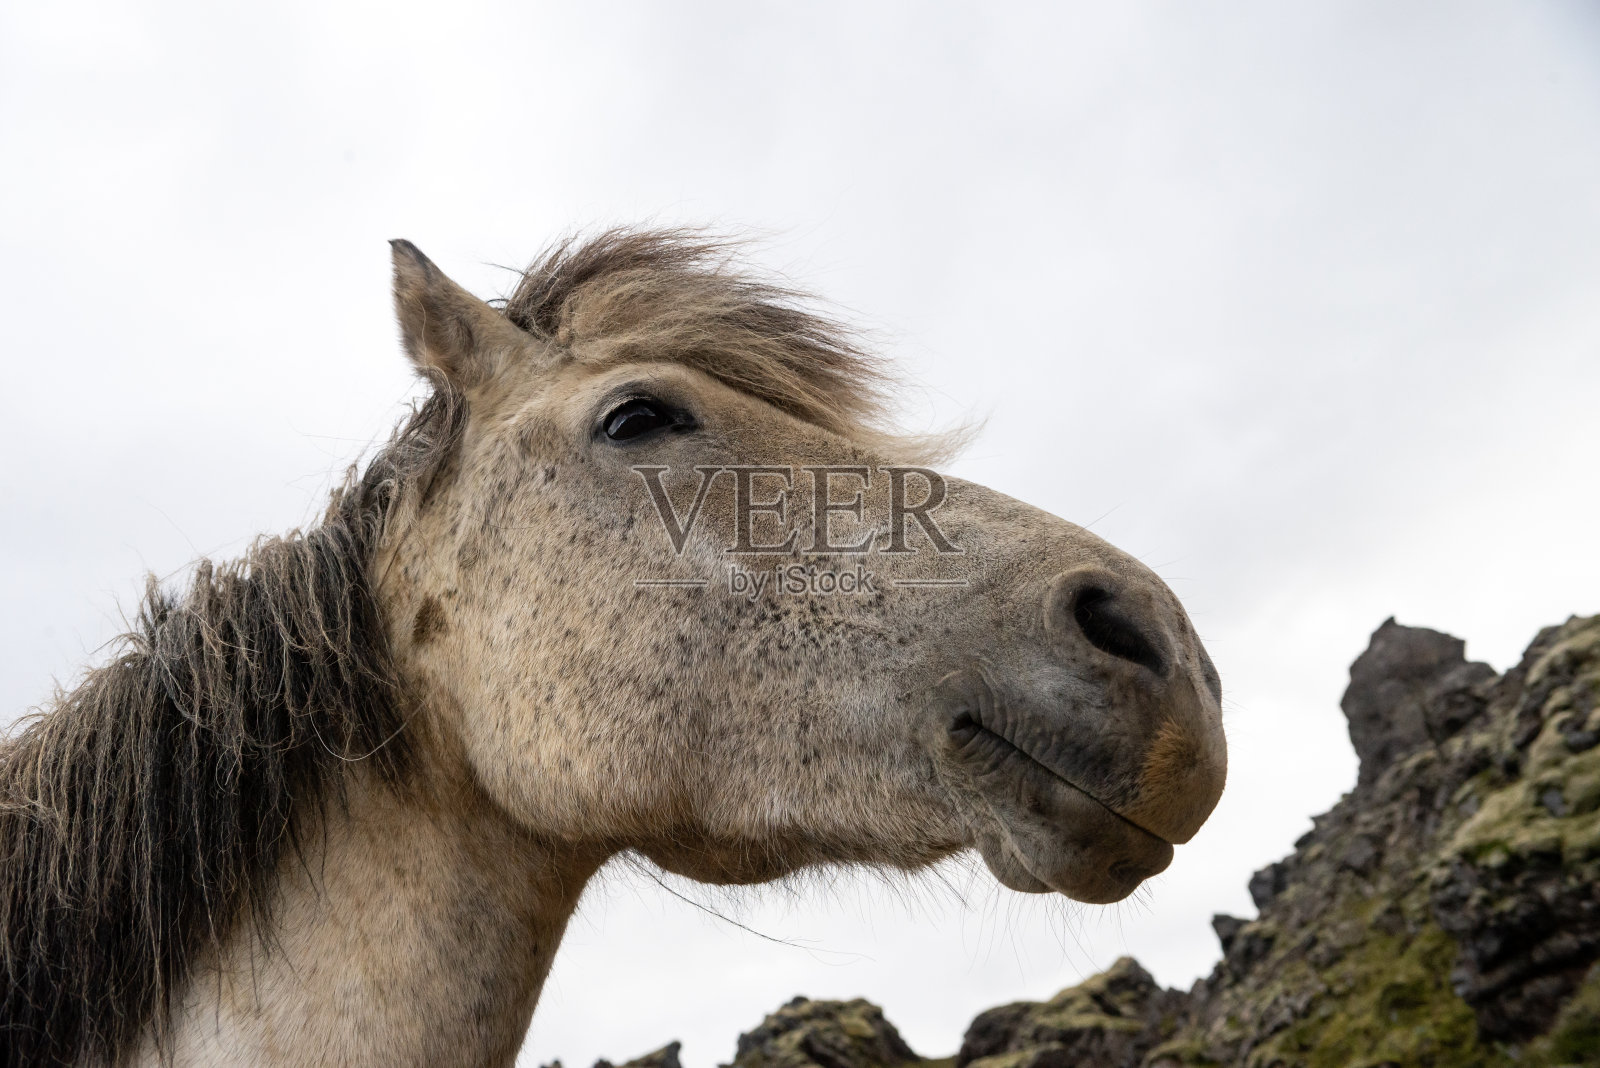 冰岛牧场冰岛马的特写照片摄影图片